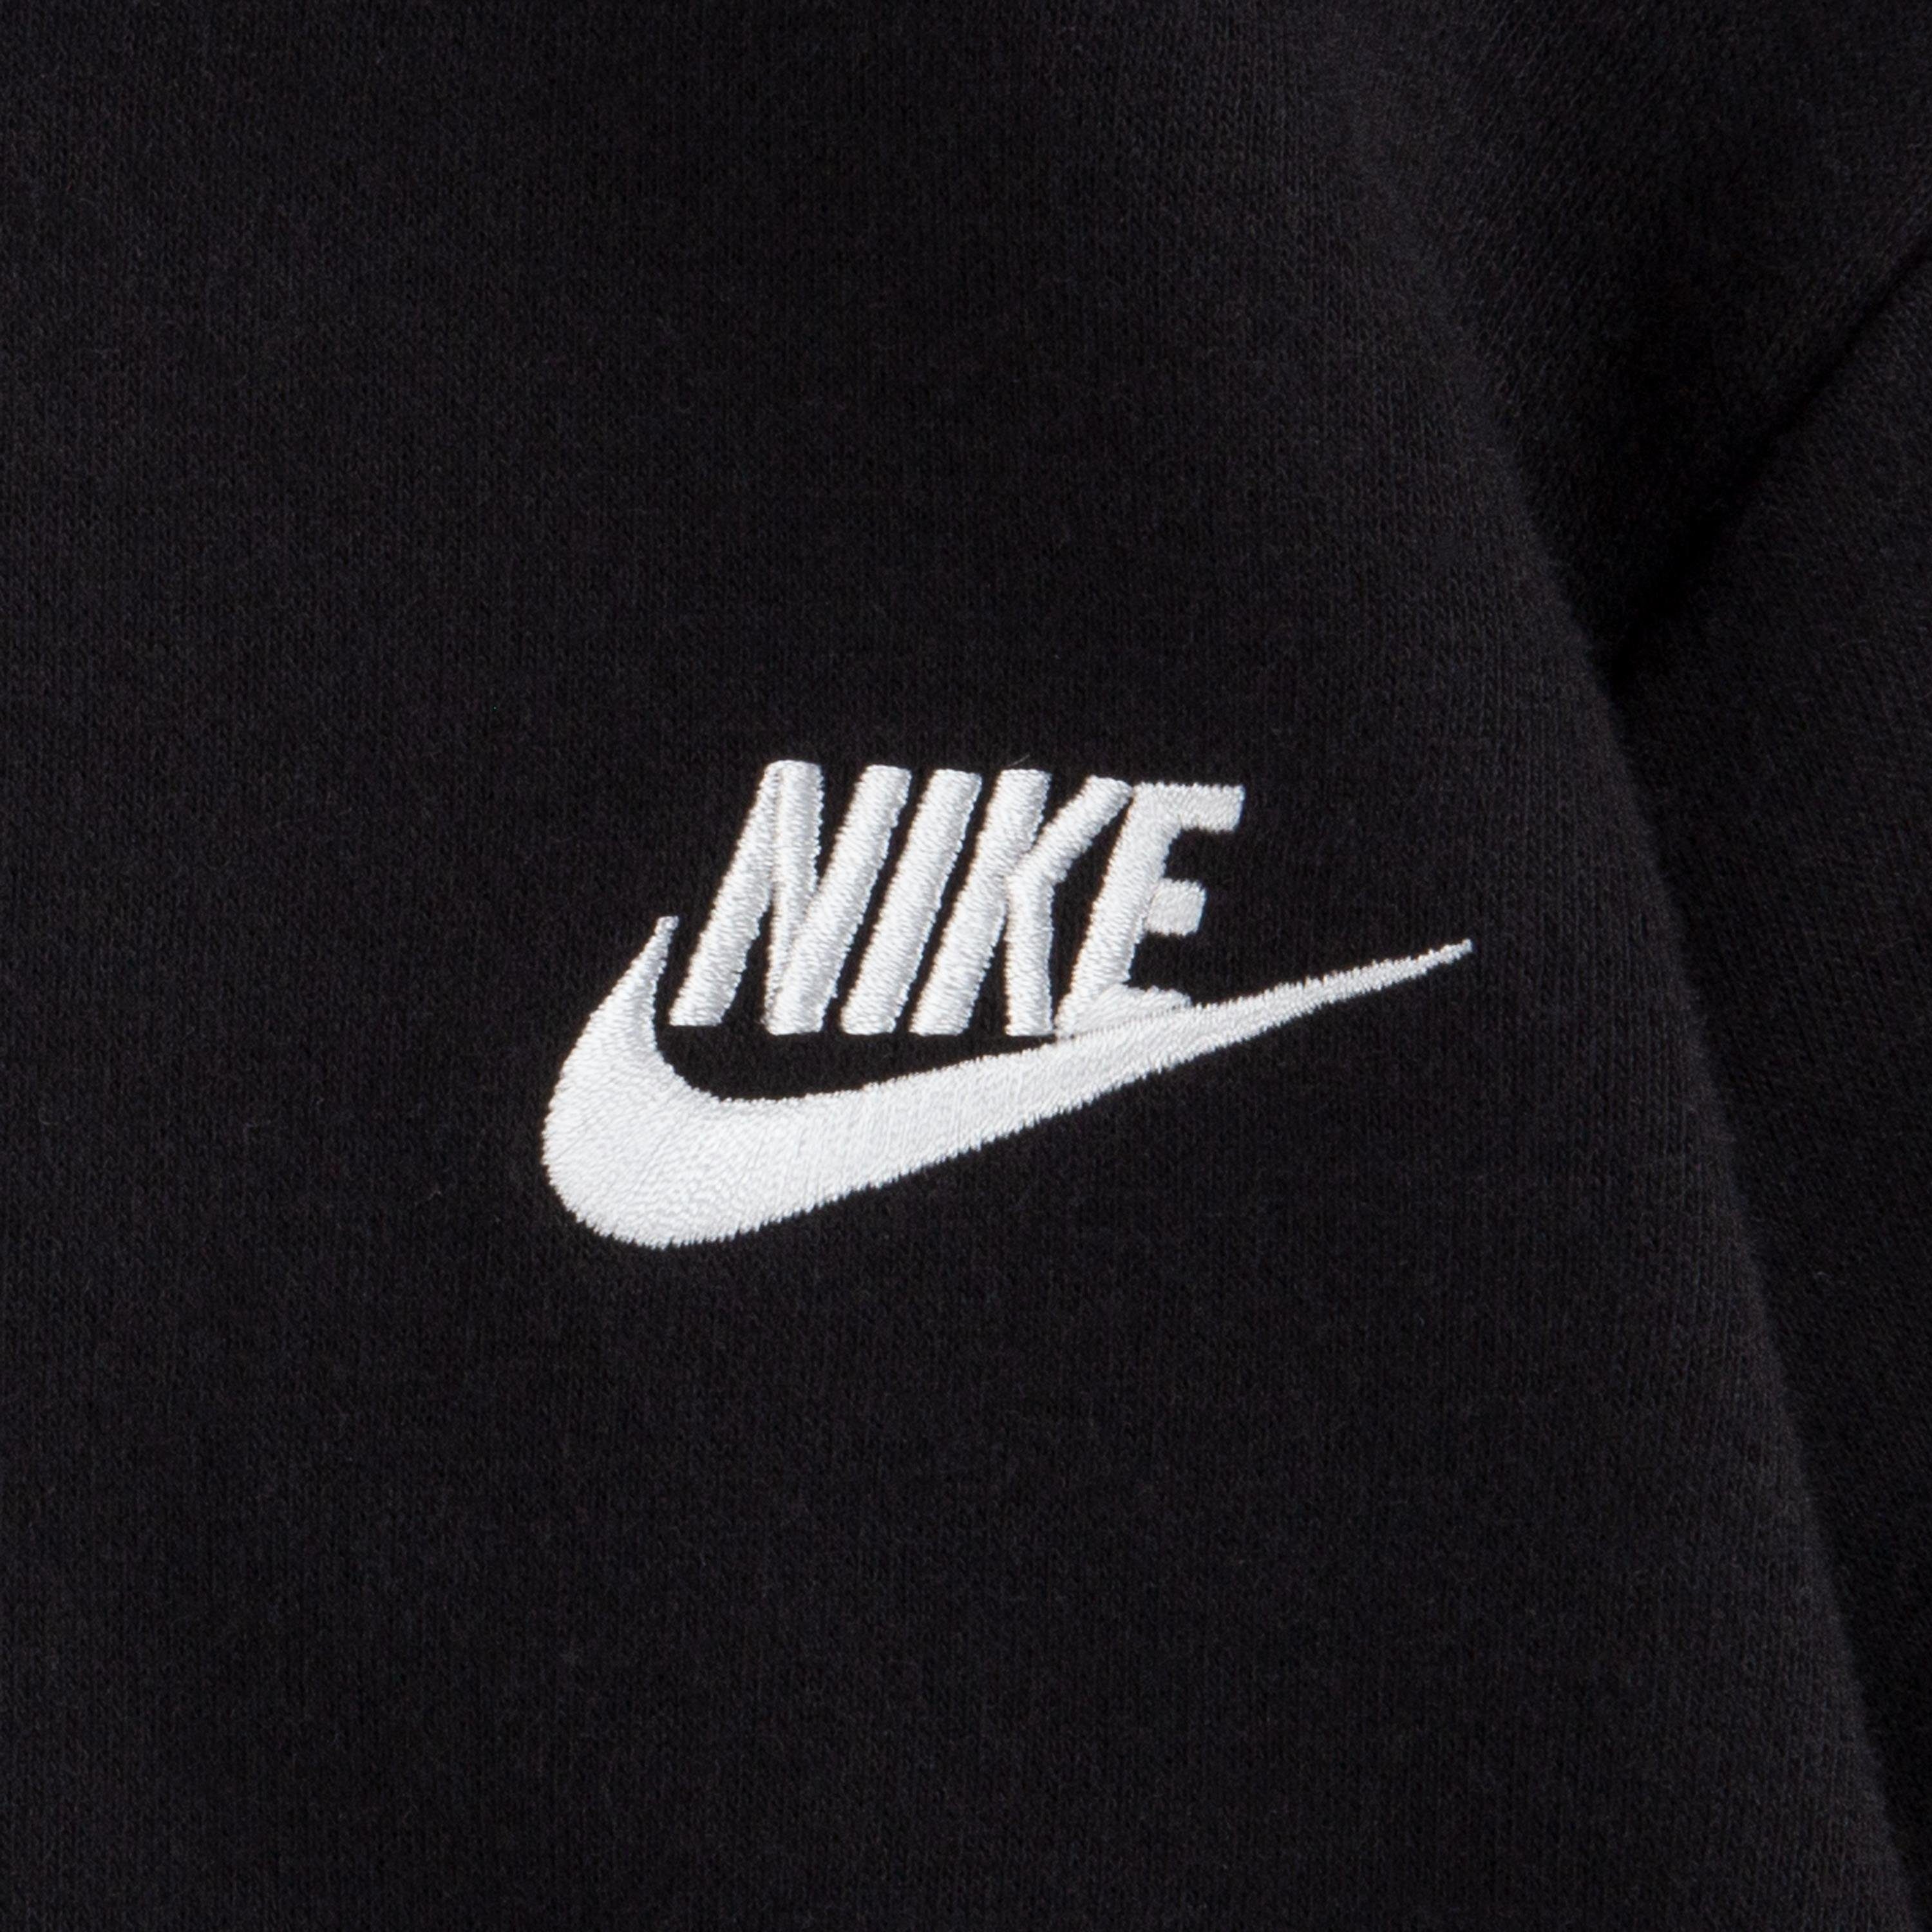 - Kinder Kapuzensweatshirt NKB FLEECE HOODIE PO schwarz Sportswear für CLUB Nike